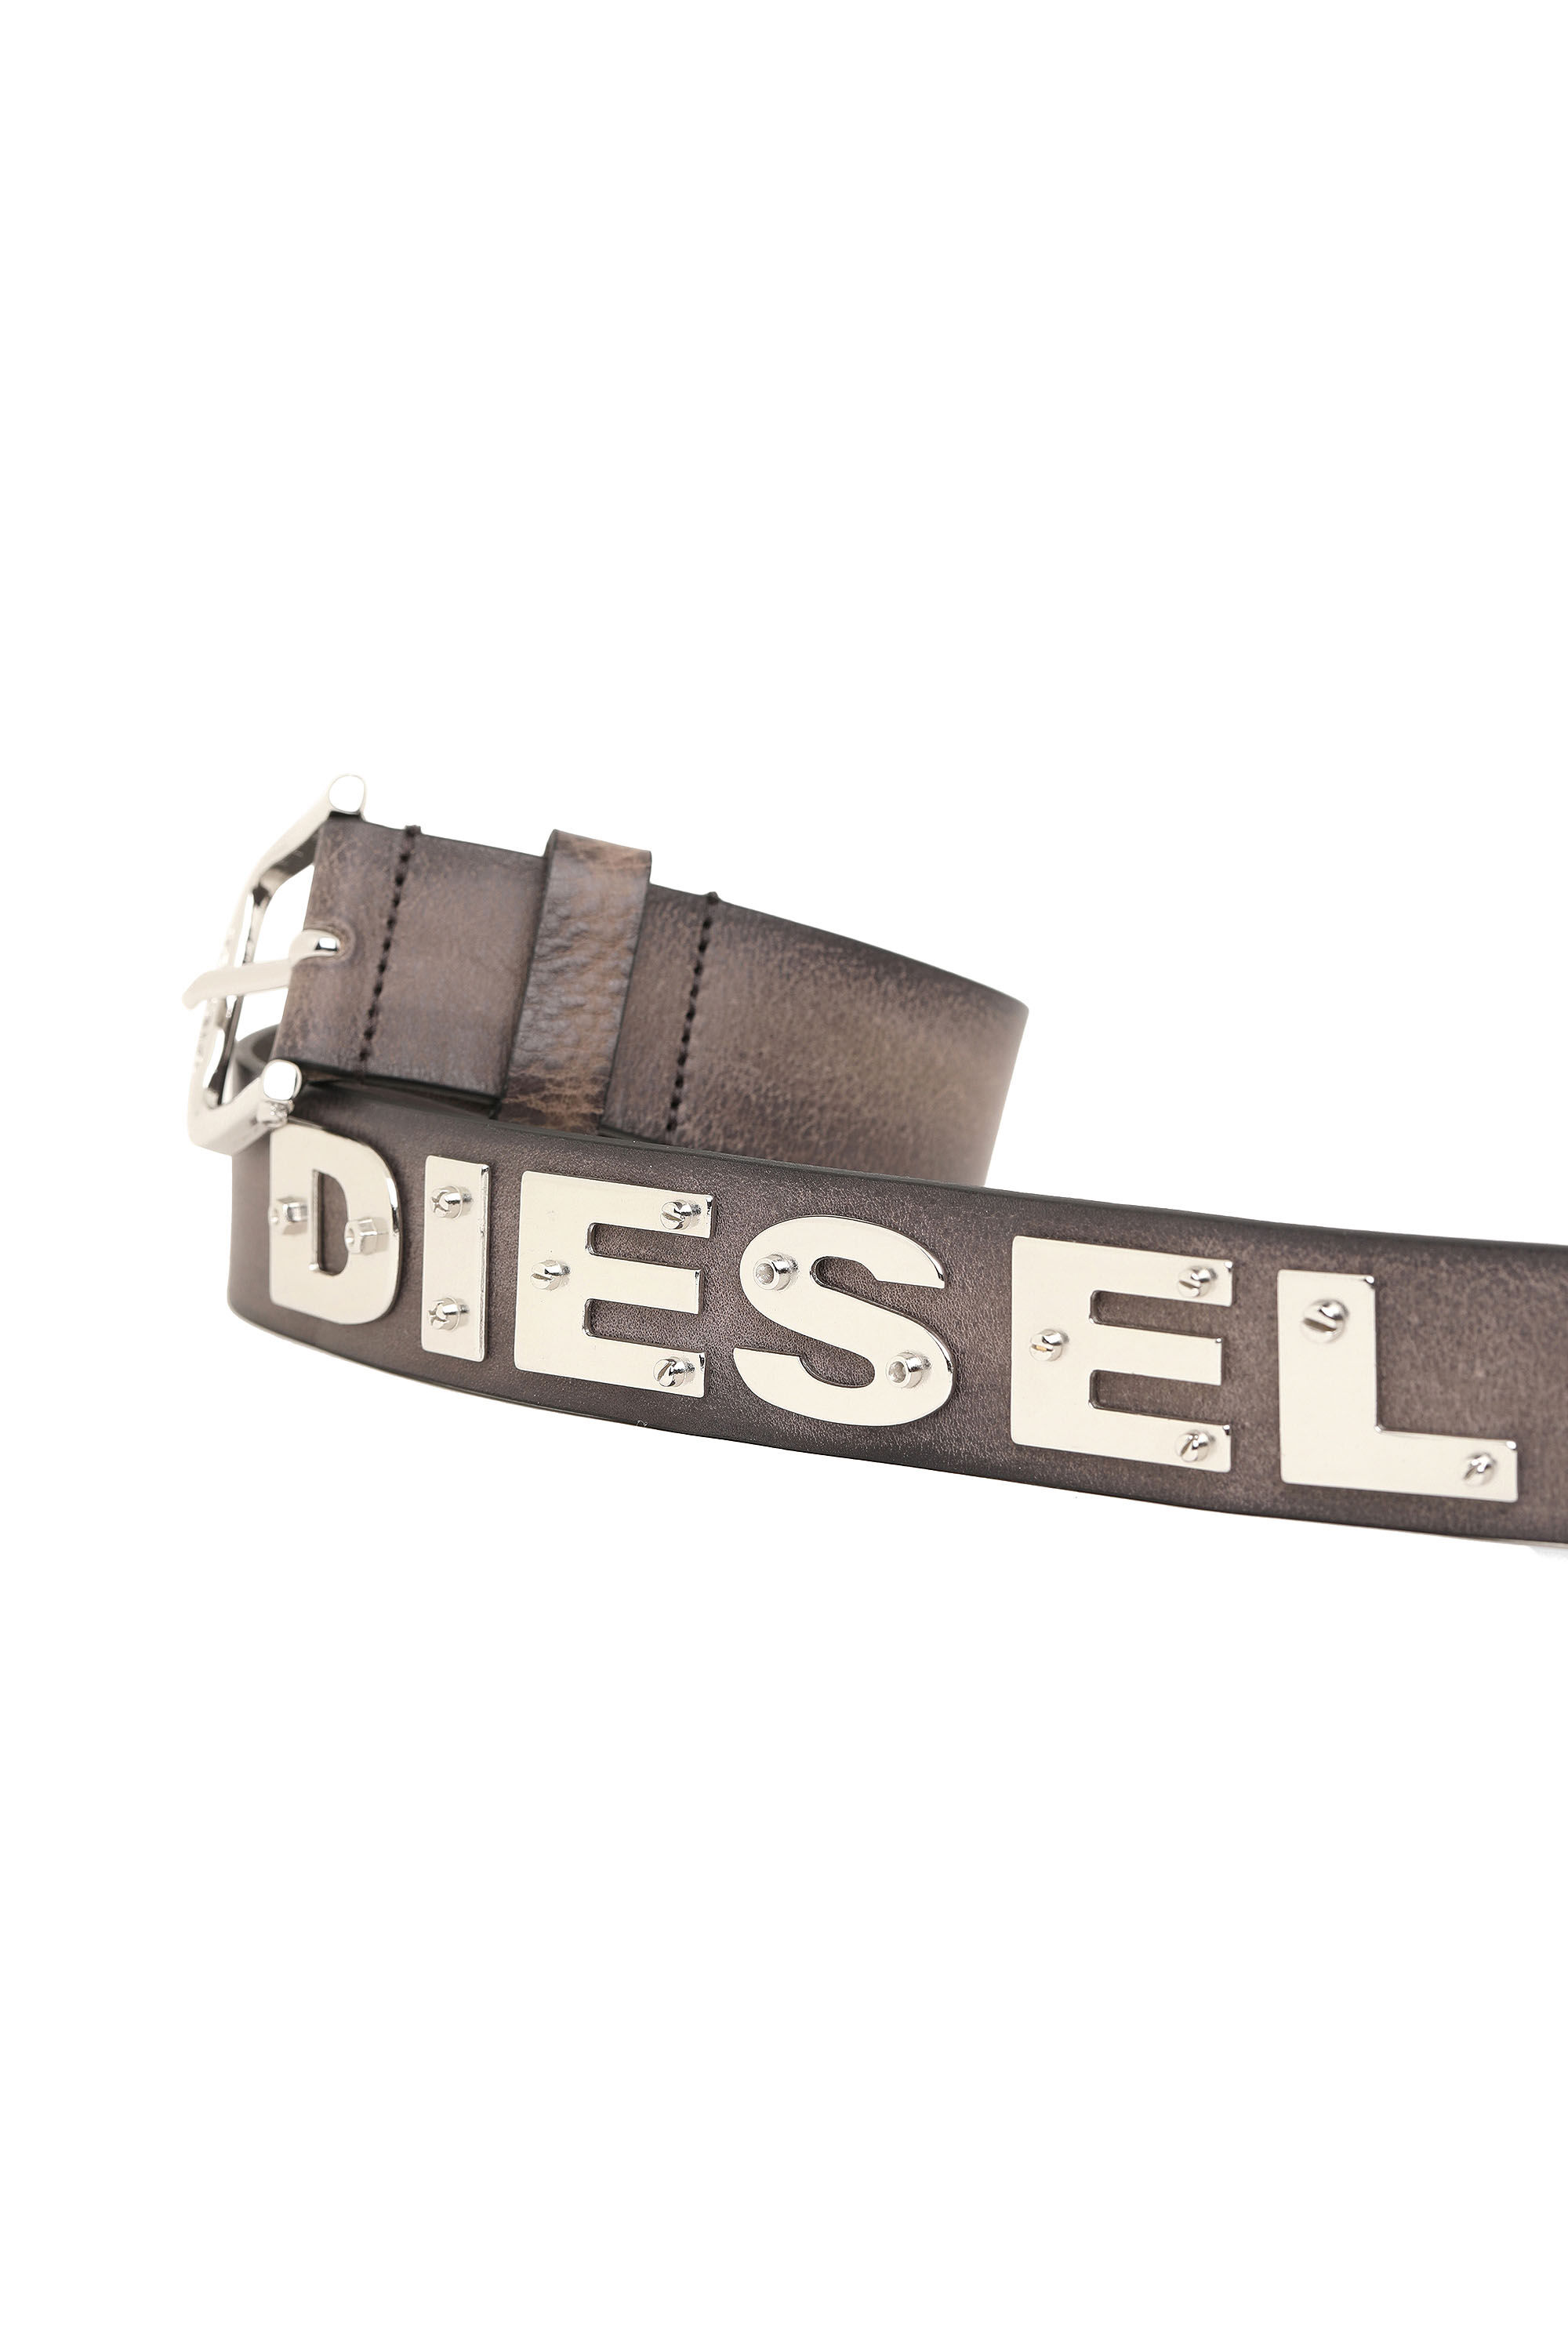 Diesel - B-DIZEL, Brown - Image 4